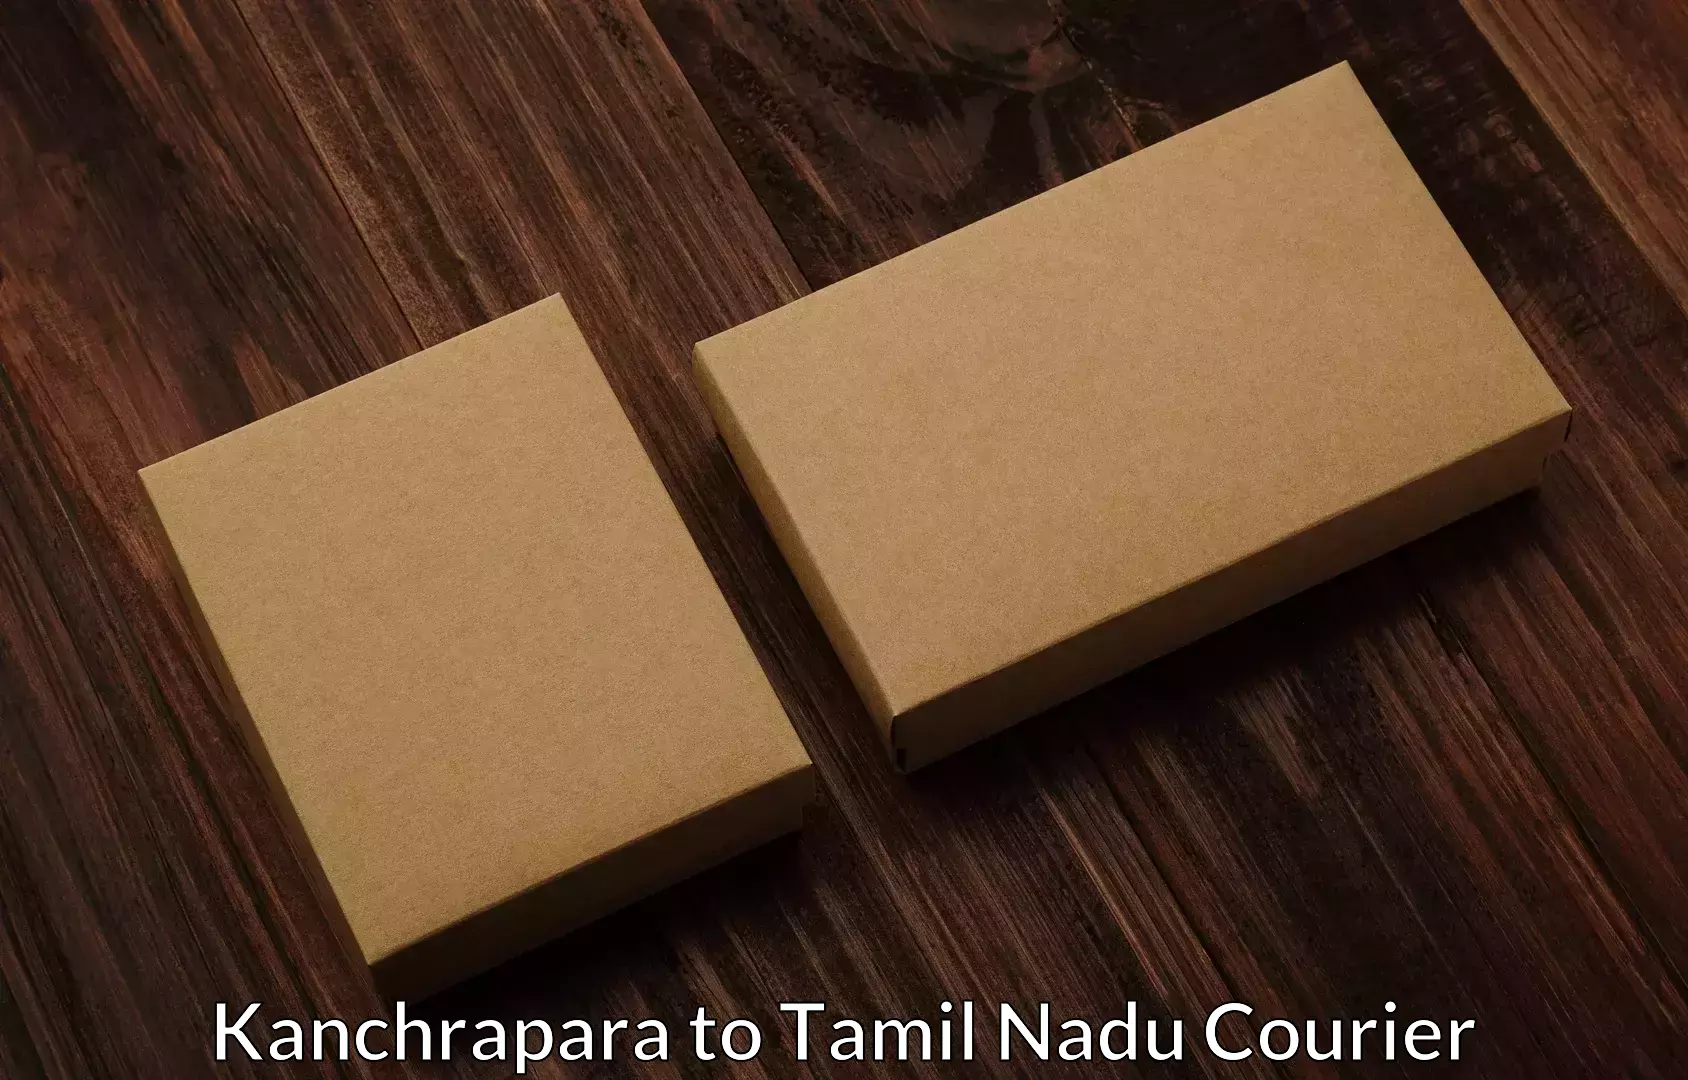 Furniture moving experts Kanchrapara to Tamil Nadu